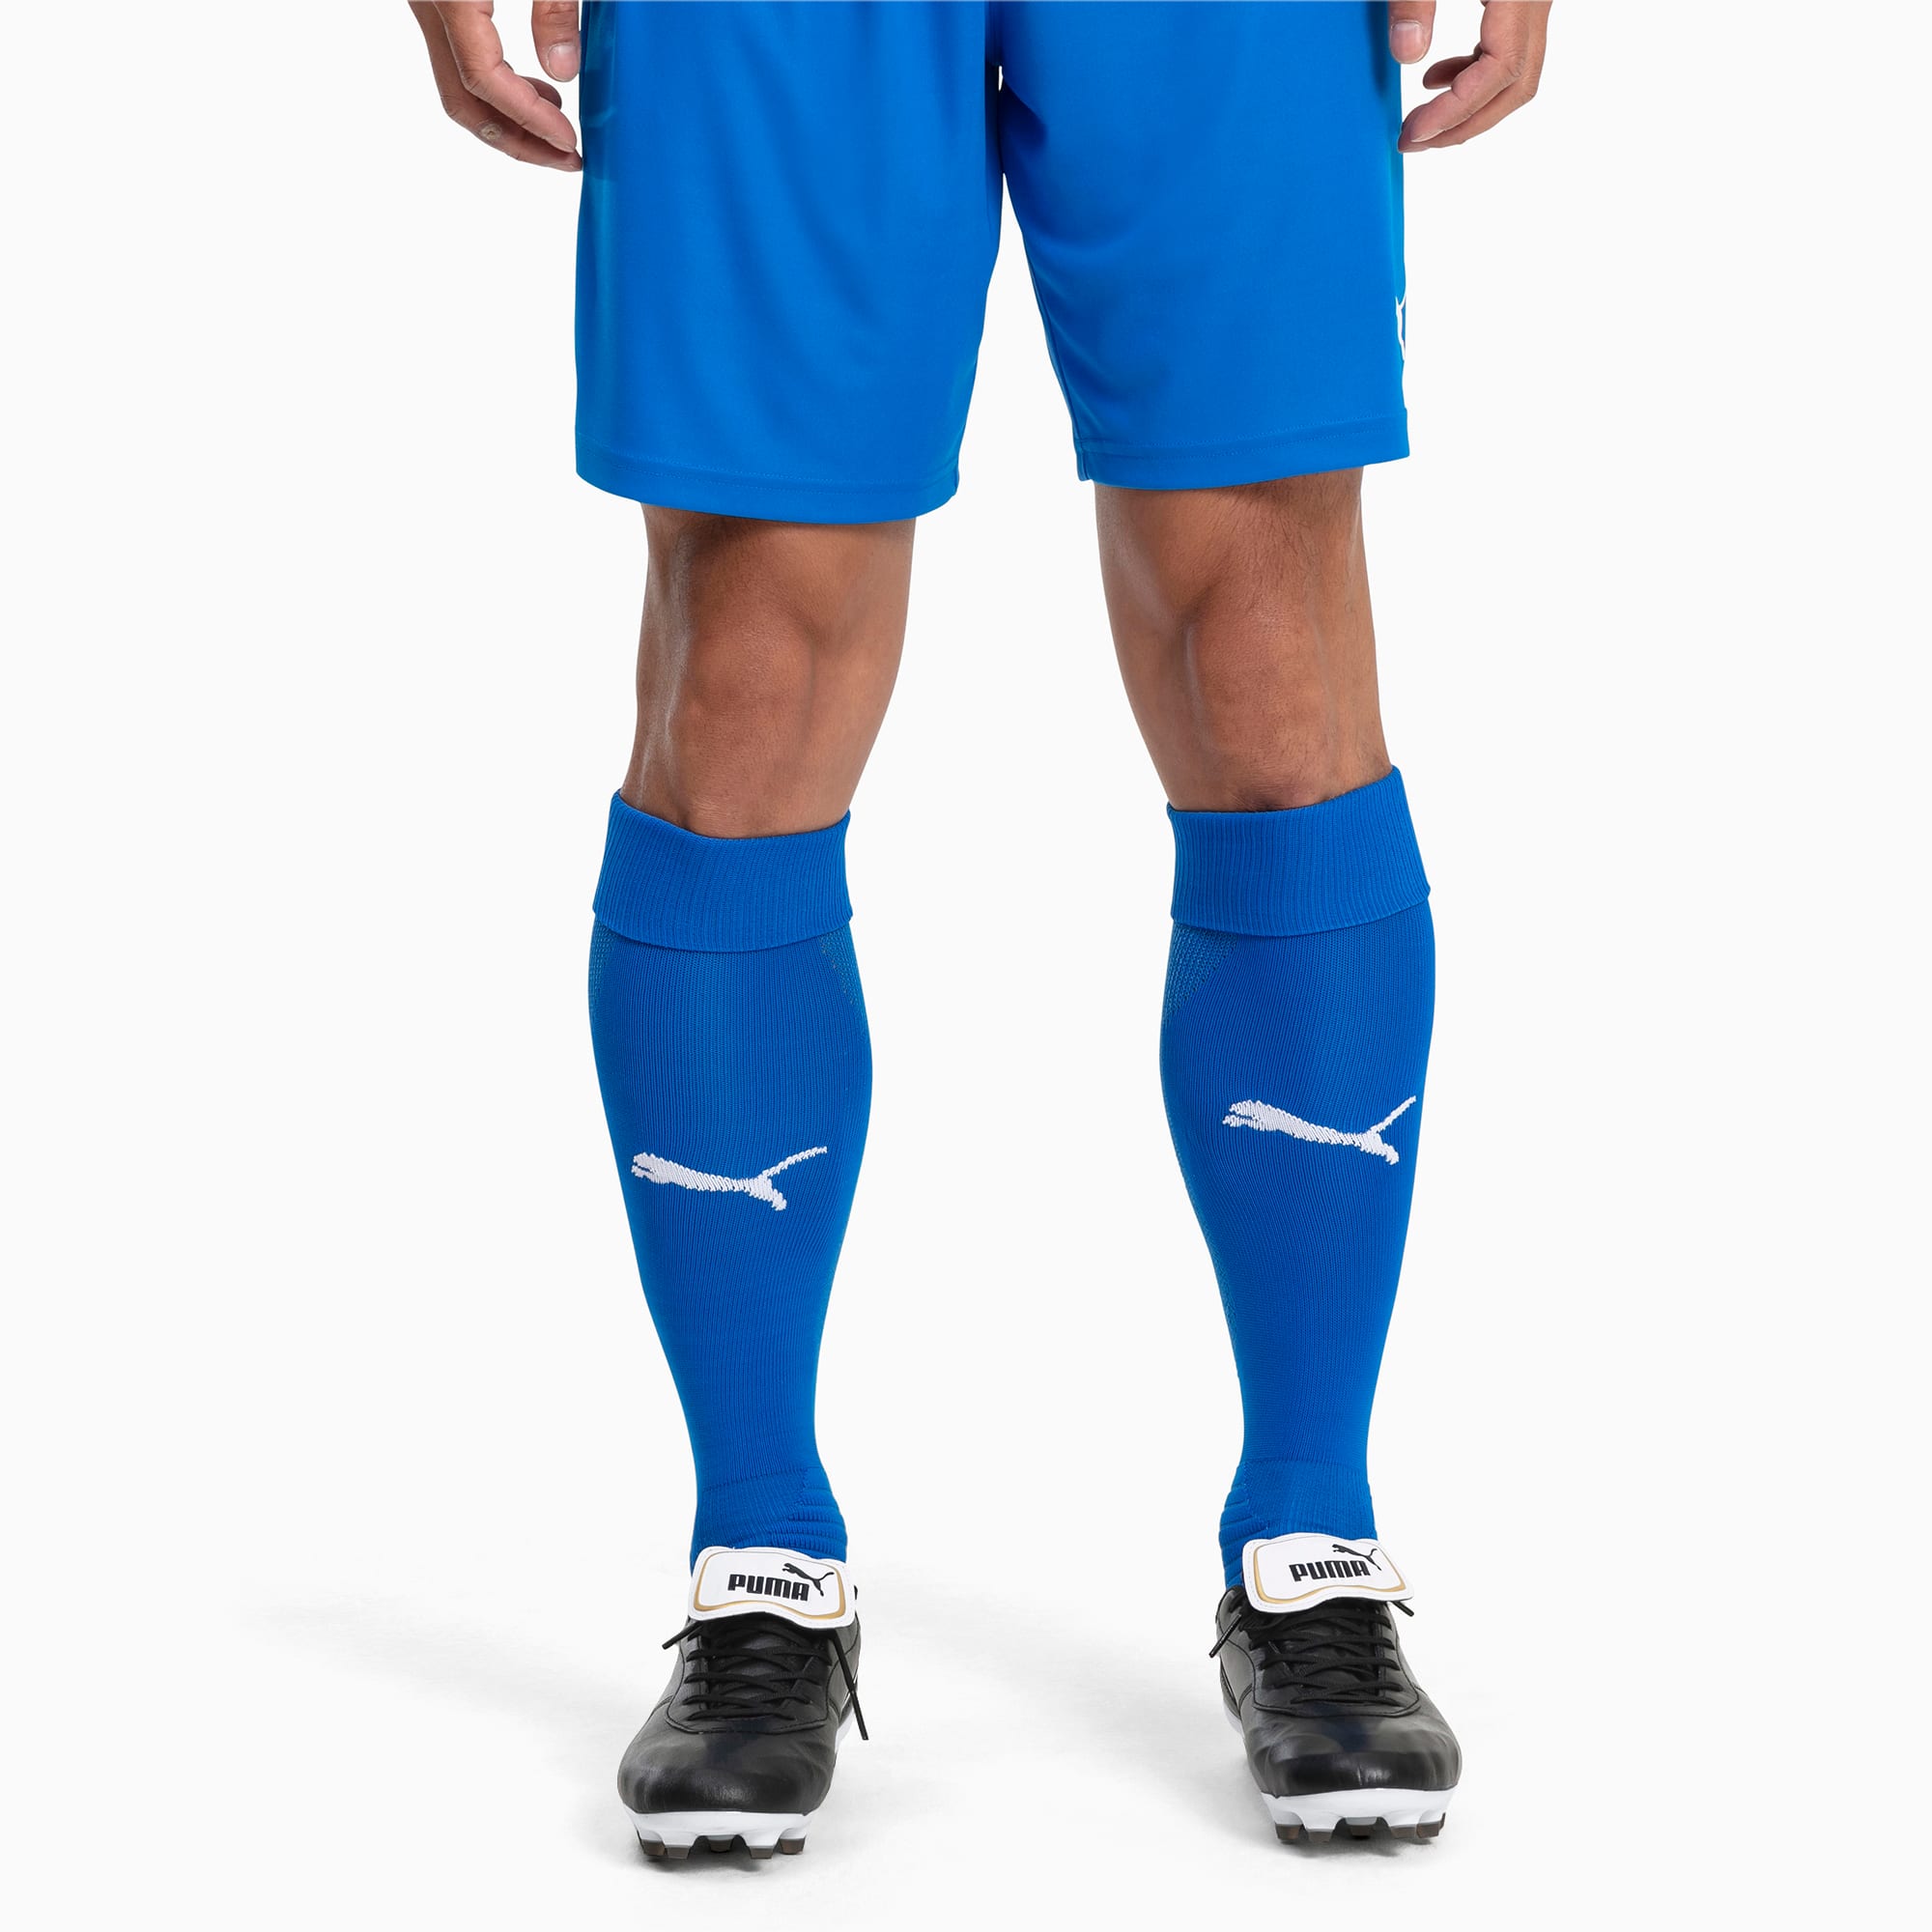 Image of PUMA Fußball Herren LIGA Socken | Mit Aucun | Blau/Weiß | Größe: 31/34